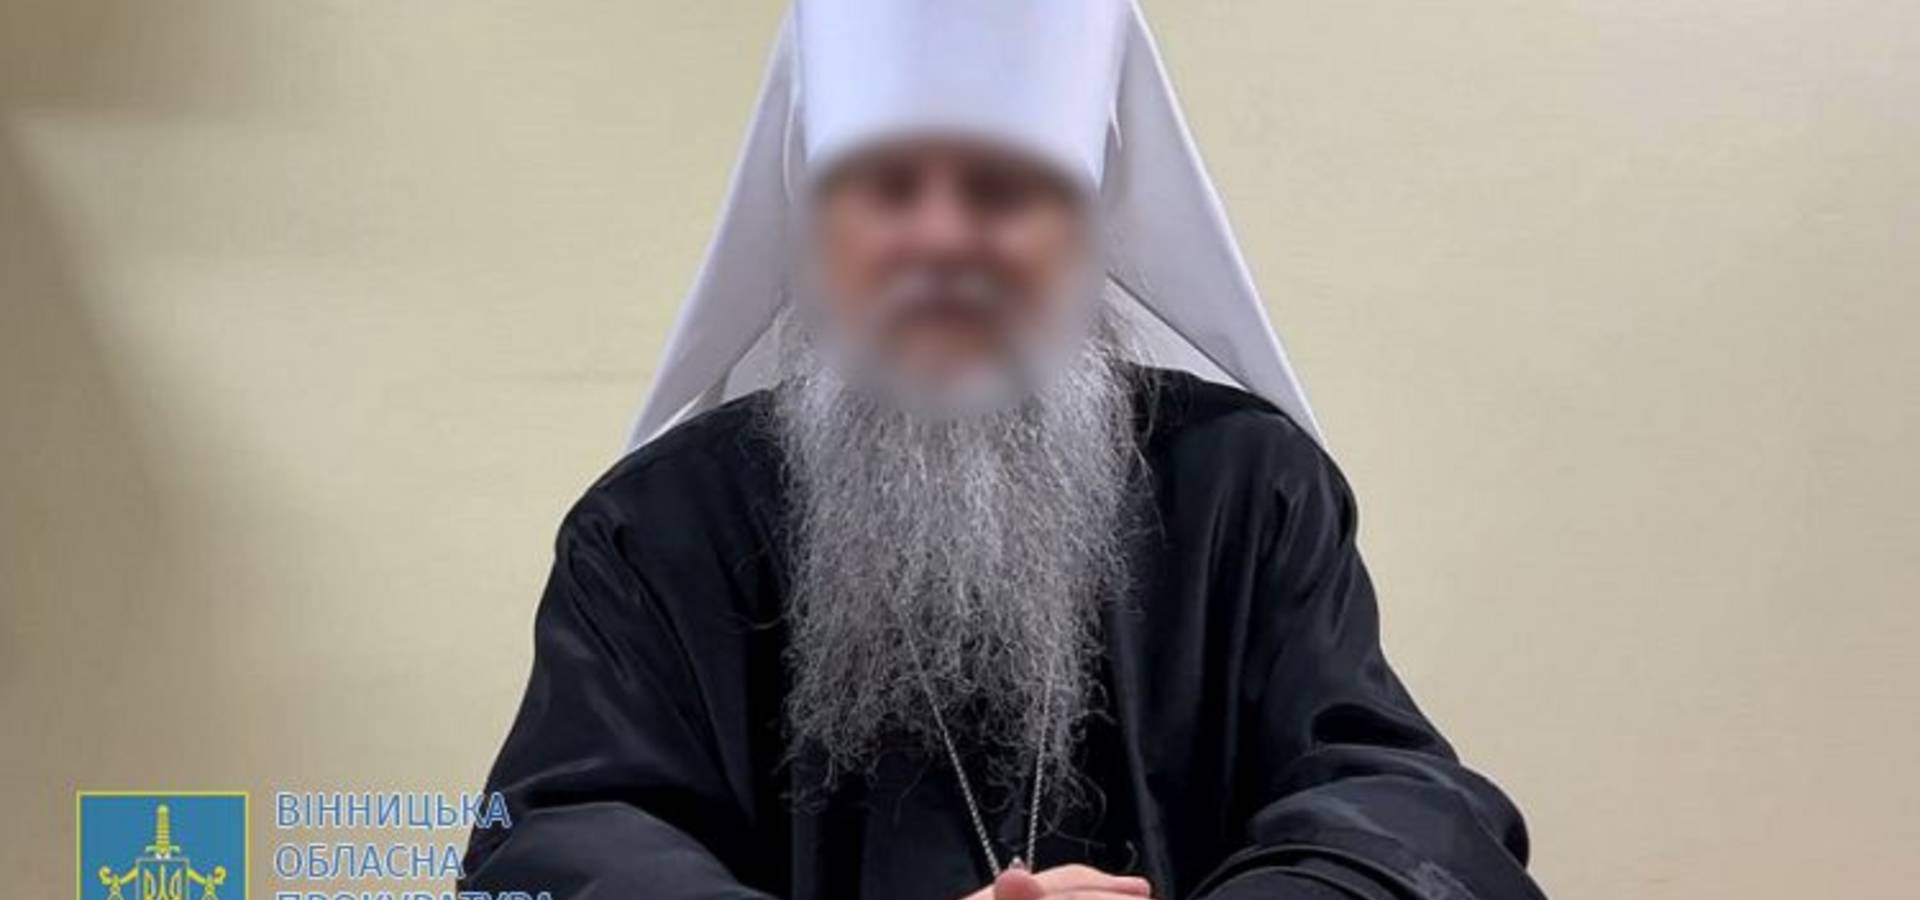 П'ять років за гратами проведе очільник Тульчинської єпархії УПЦ московського патріархату